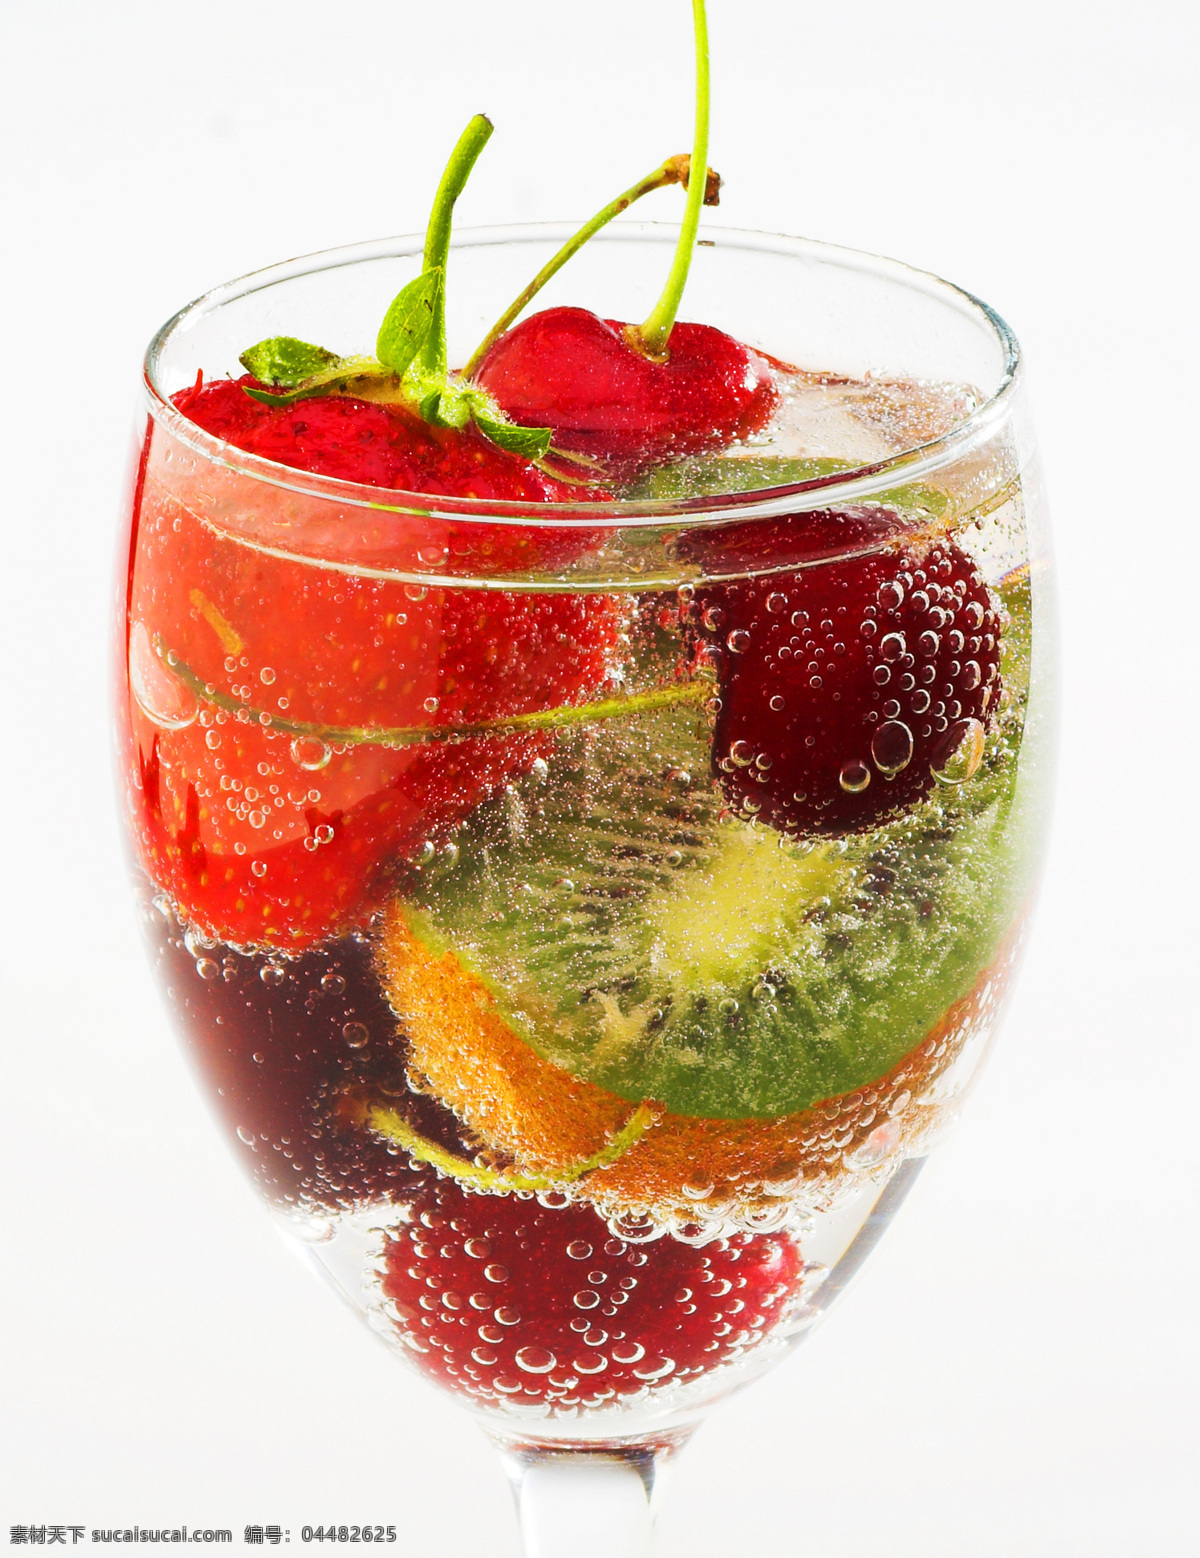 杯中 新鲜 水果 杯中水果 草莓 新鲜草莓 迷糊桃 叶子 绿叶 水 浸泡 水泡 气泡 杯子 玻璃杯 高清图片 水果图片 餐饮美食